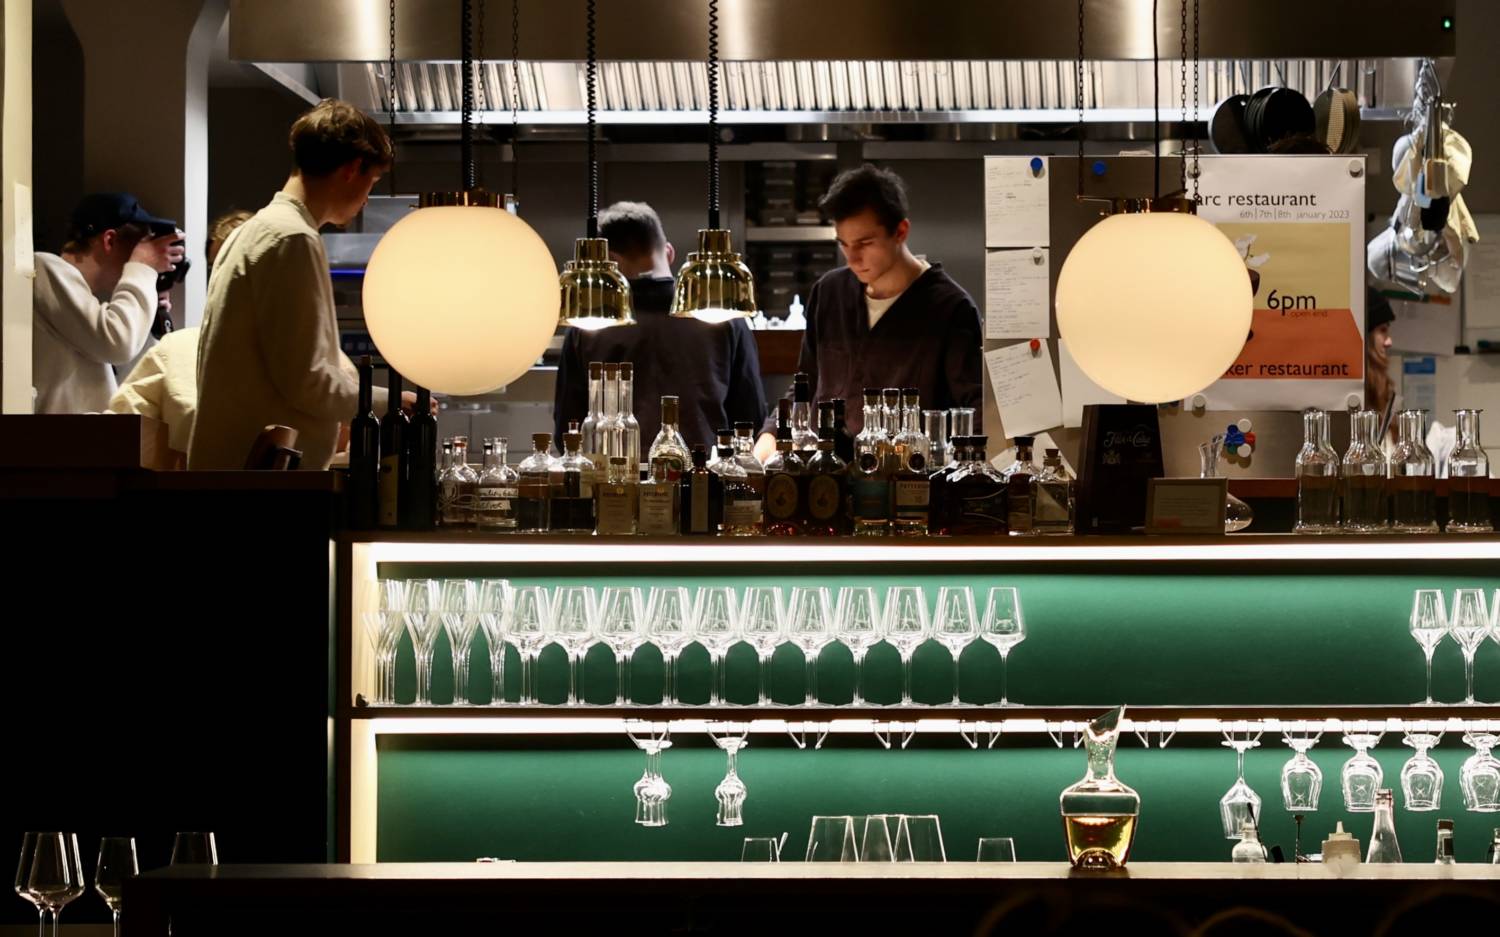 Das Arc Restaurant feierte seine Prämiere in der Klinker Bar / ©Franziska Heinemann-Schulte